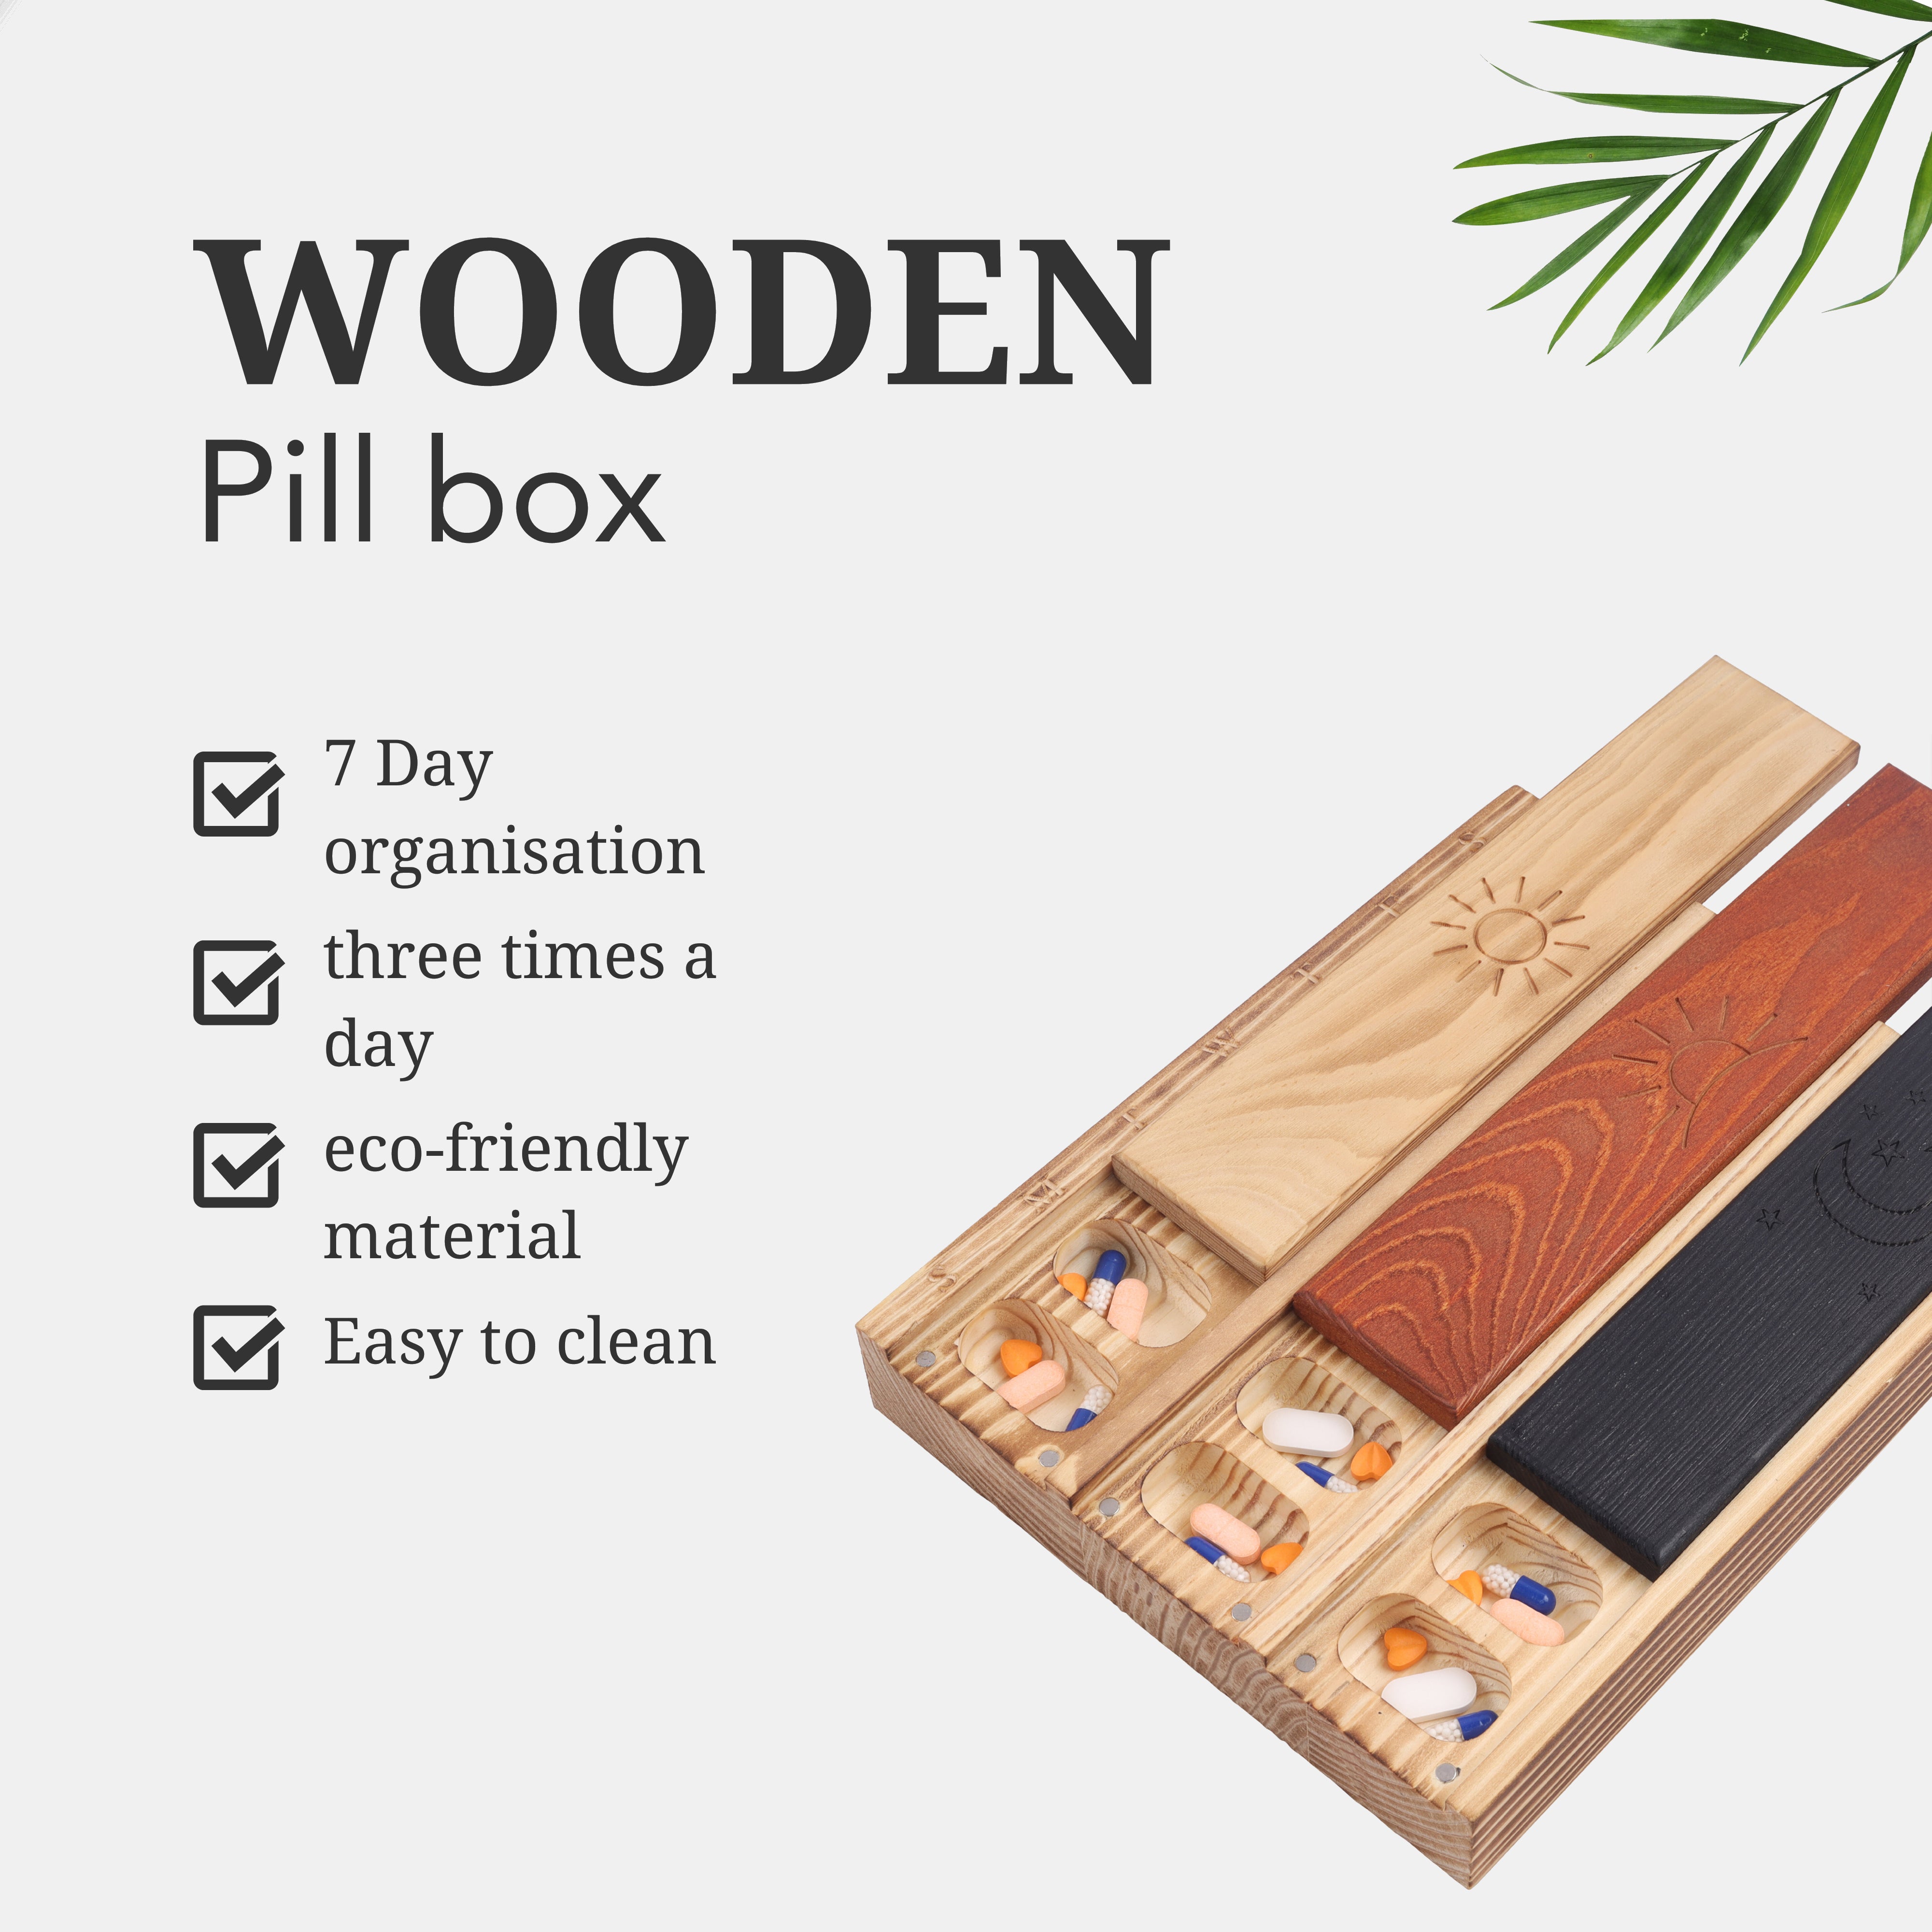 Wooden pill box